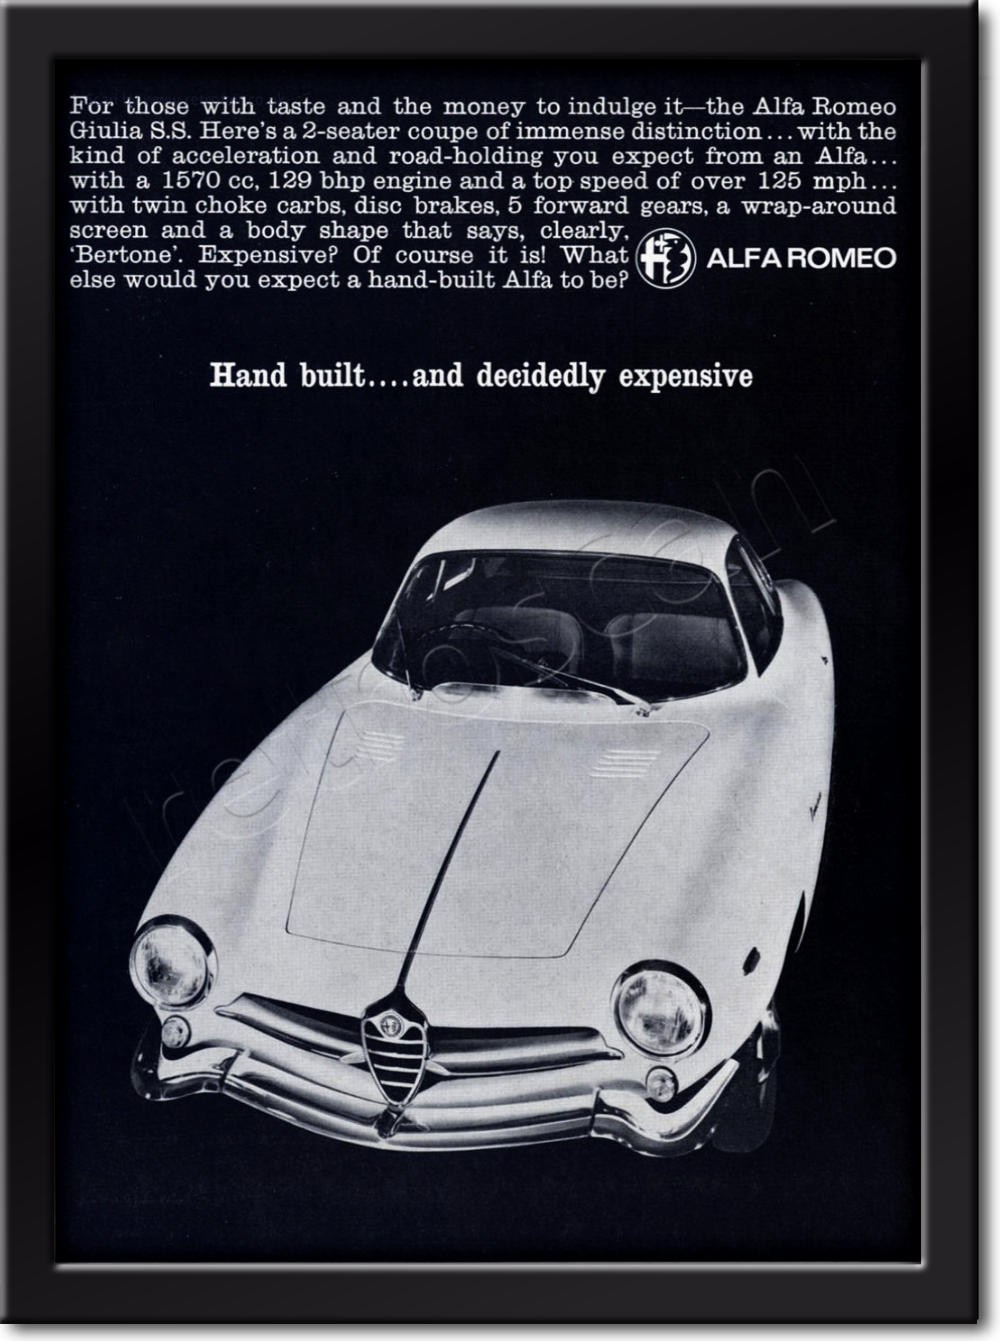 1965 vintage Alfa Romeo Giulia advert